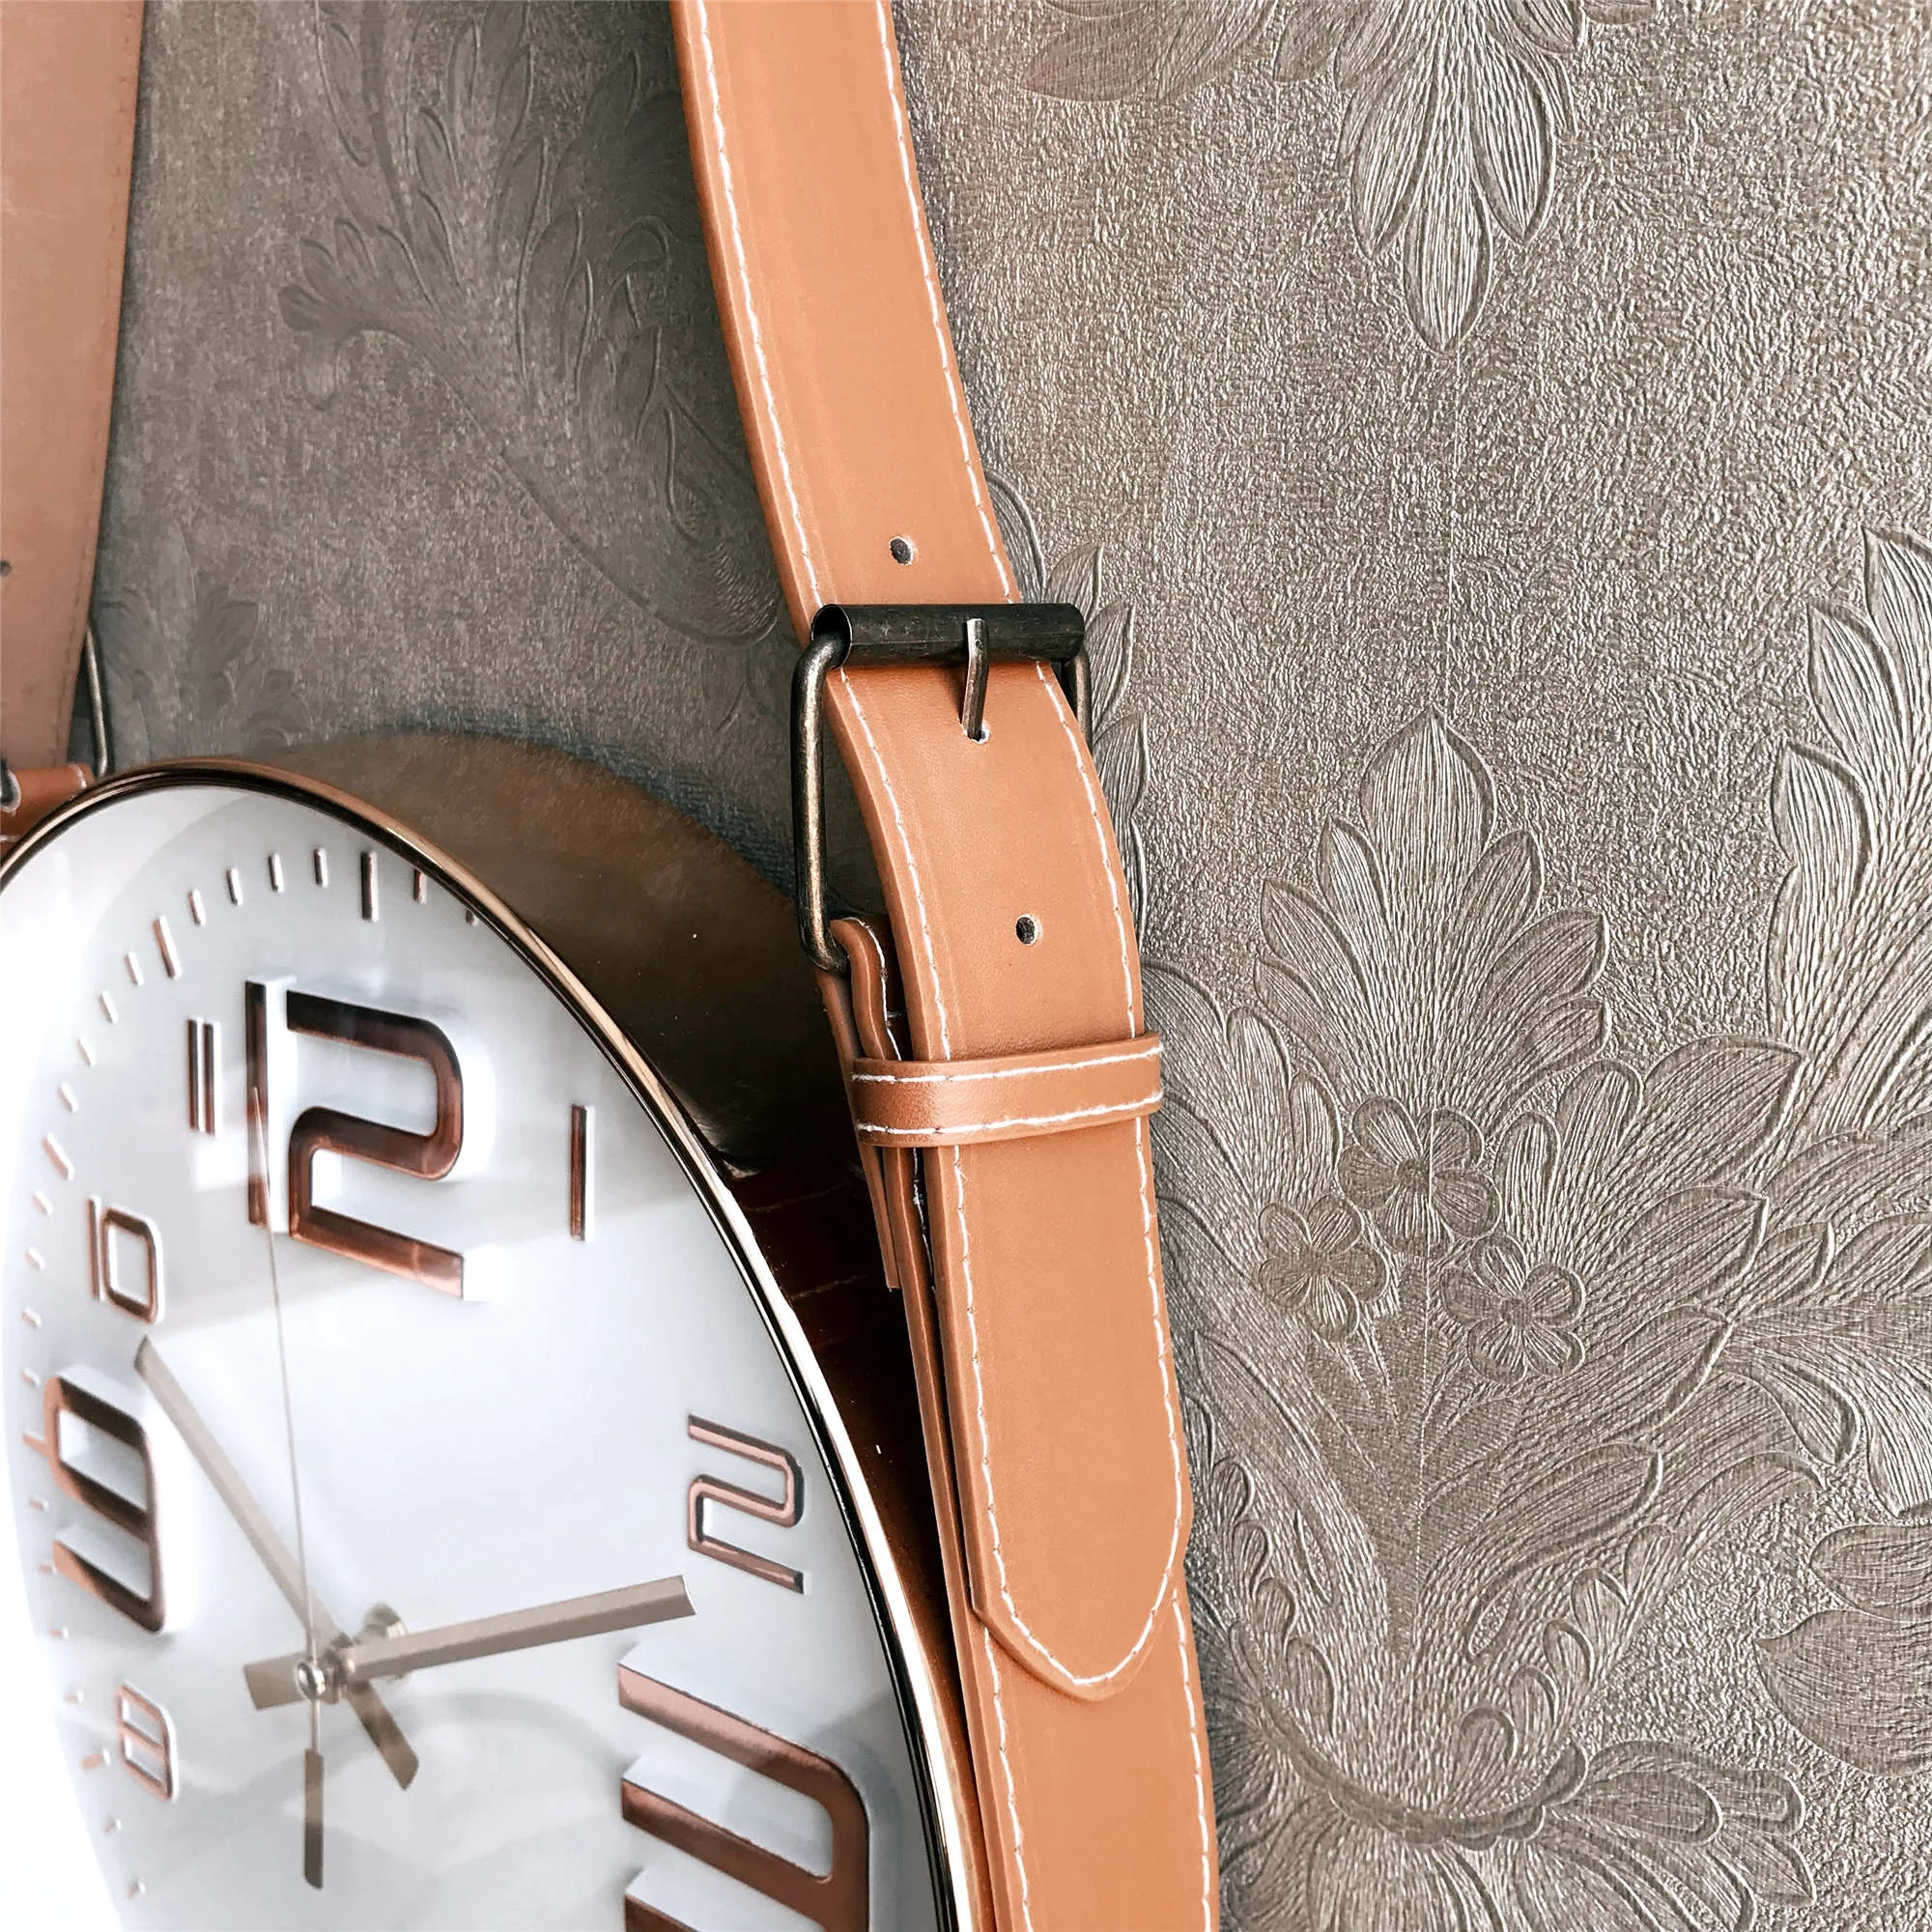 Простые декоративные настенные часы с ремешком, минималистичные украшения для гостиной и дома